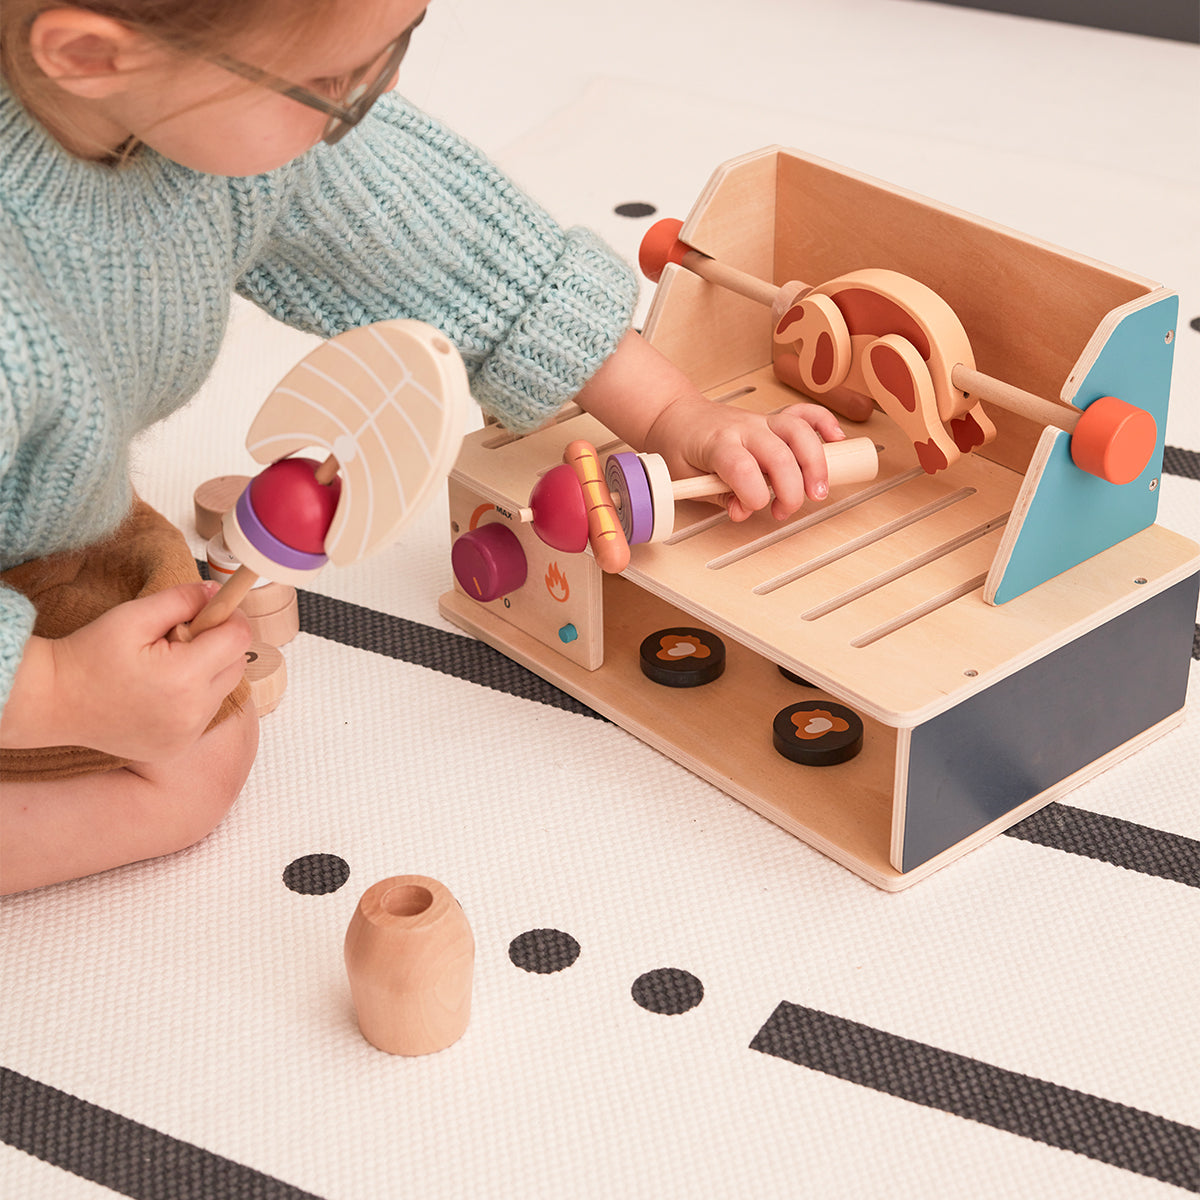 De Kid’s Concept houten grill set is een super leuke speelset voor kinderen die dol zijn op barbecueën. Lekker net als papa of mama grillen, maar dan nep en helemaal veilig natuurlijk. Wat maak jij voor lekkers met deze bbq? VanZus.